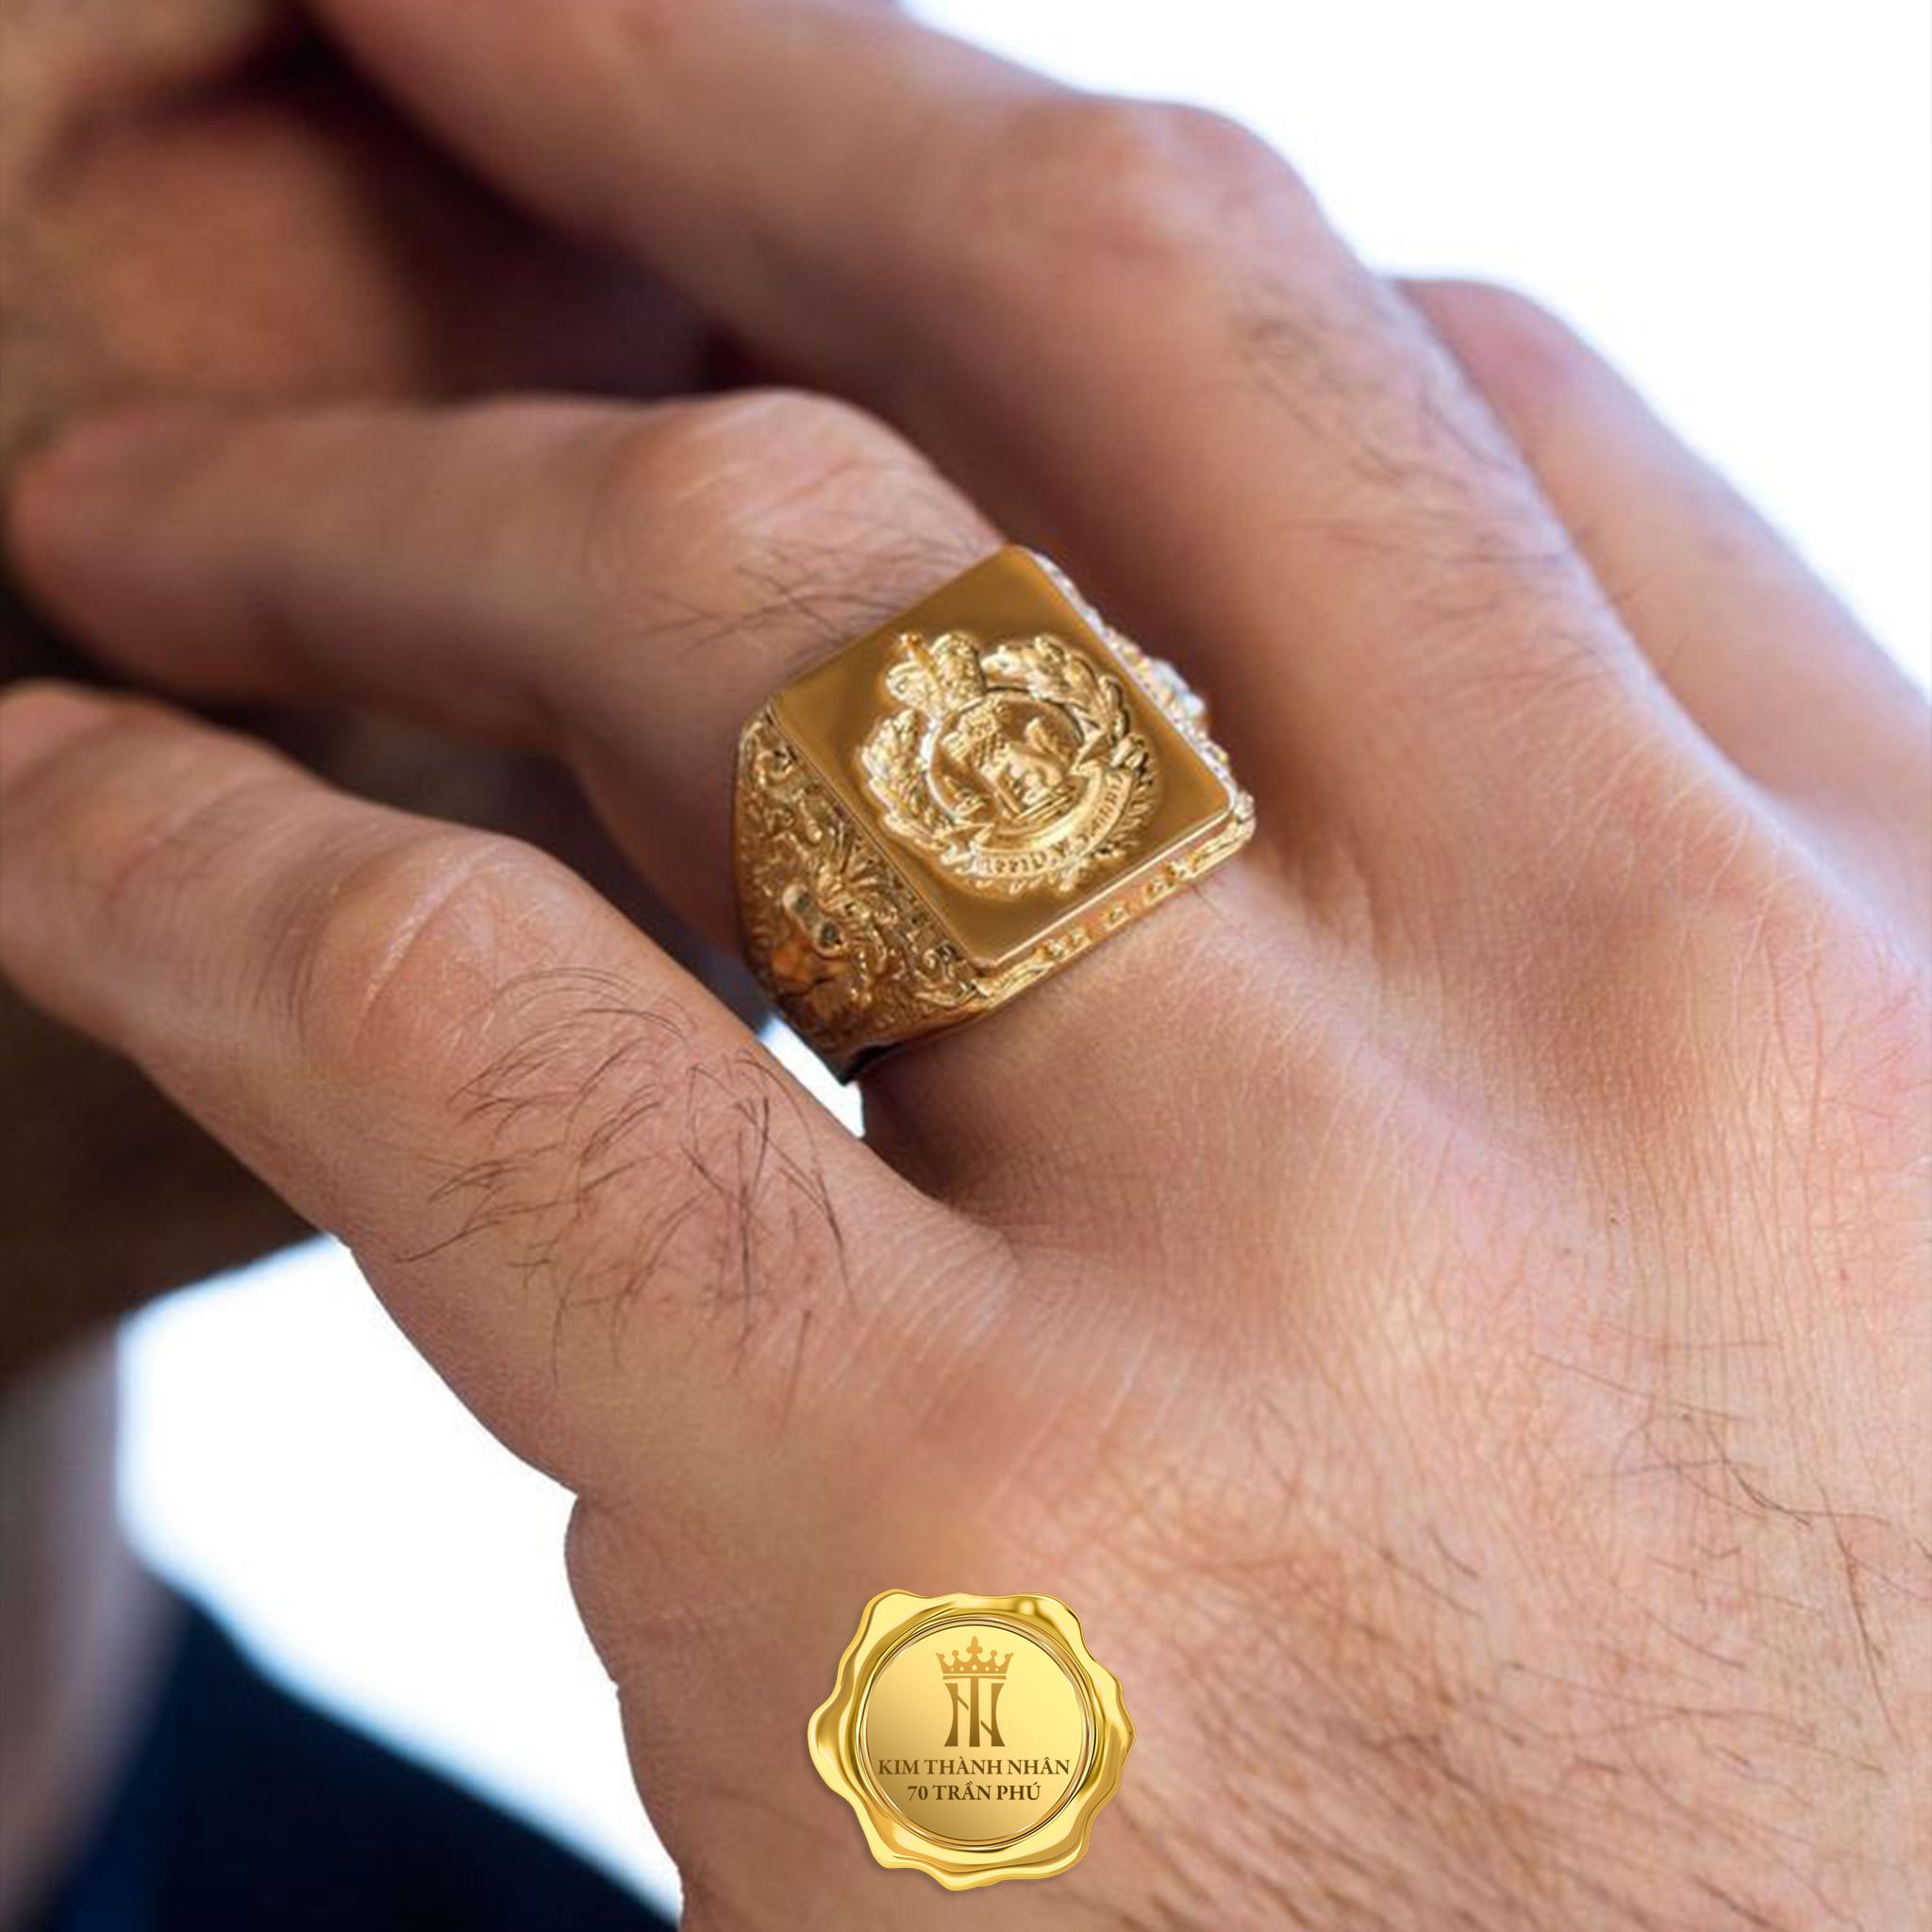 Những chiếc Nhẫn Dấu mang phong cách riêng của Kim Thành Nhân có thể trở thành món quà tặng đối tác, khách hàng vô cùng độc đáo.